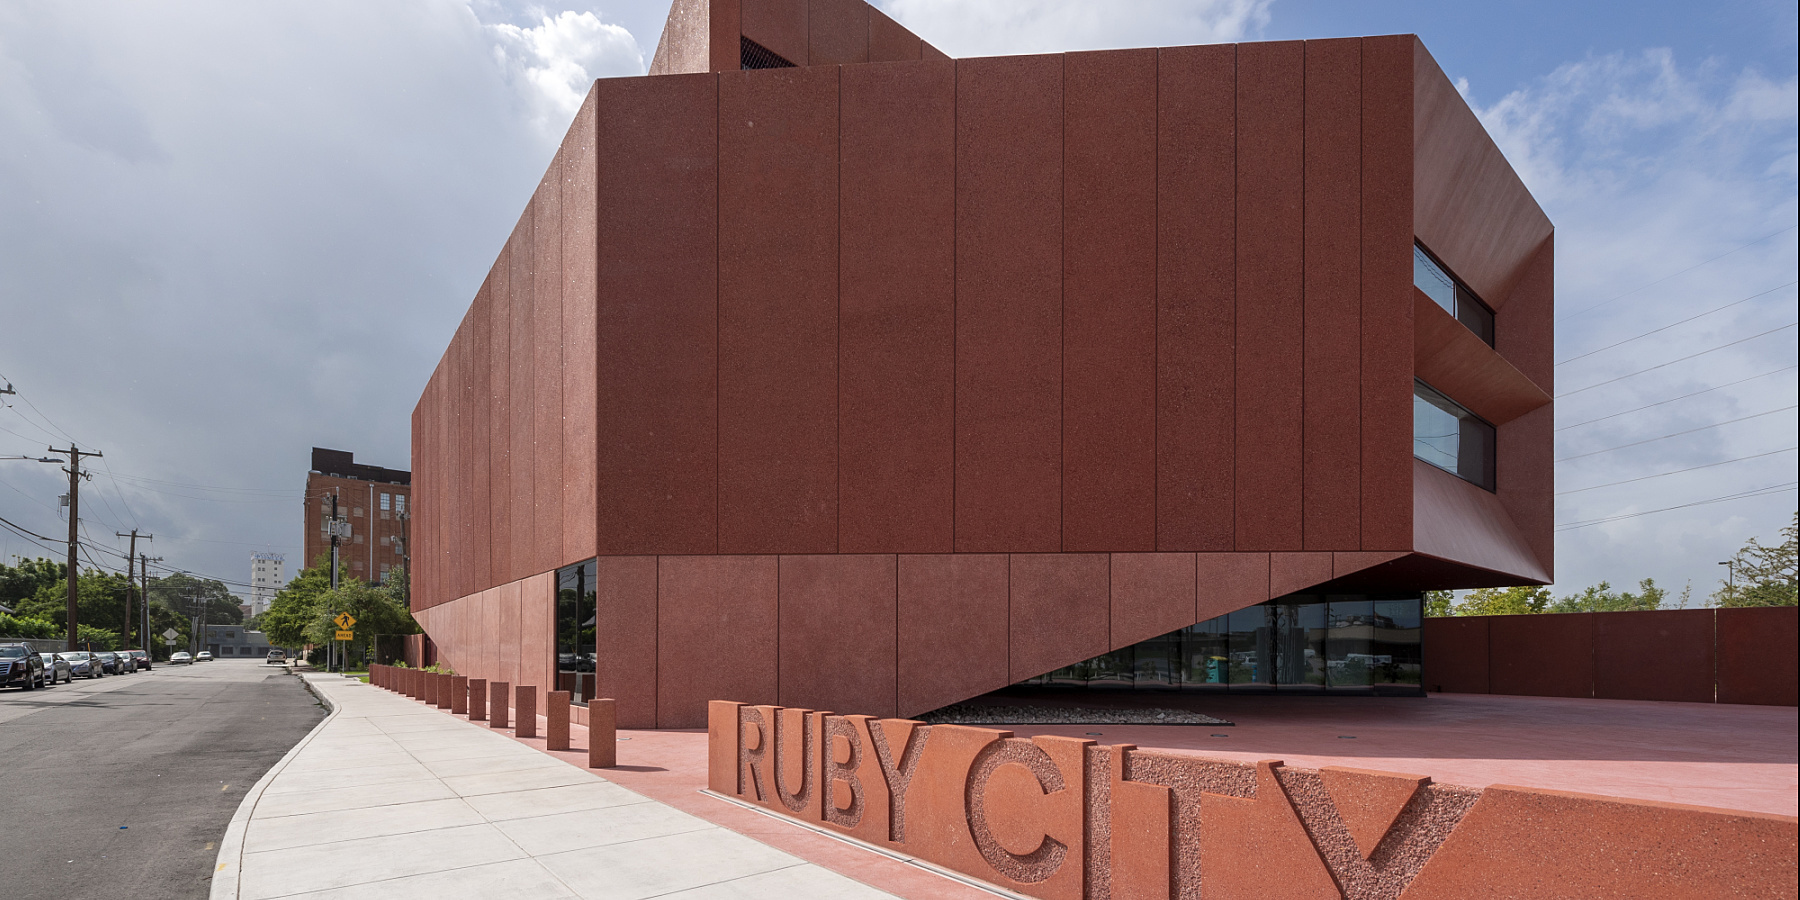 La nueva luz de ERCO para el Museo Ruby City de Texas, San Antonio, Estados Unidos